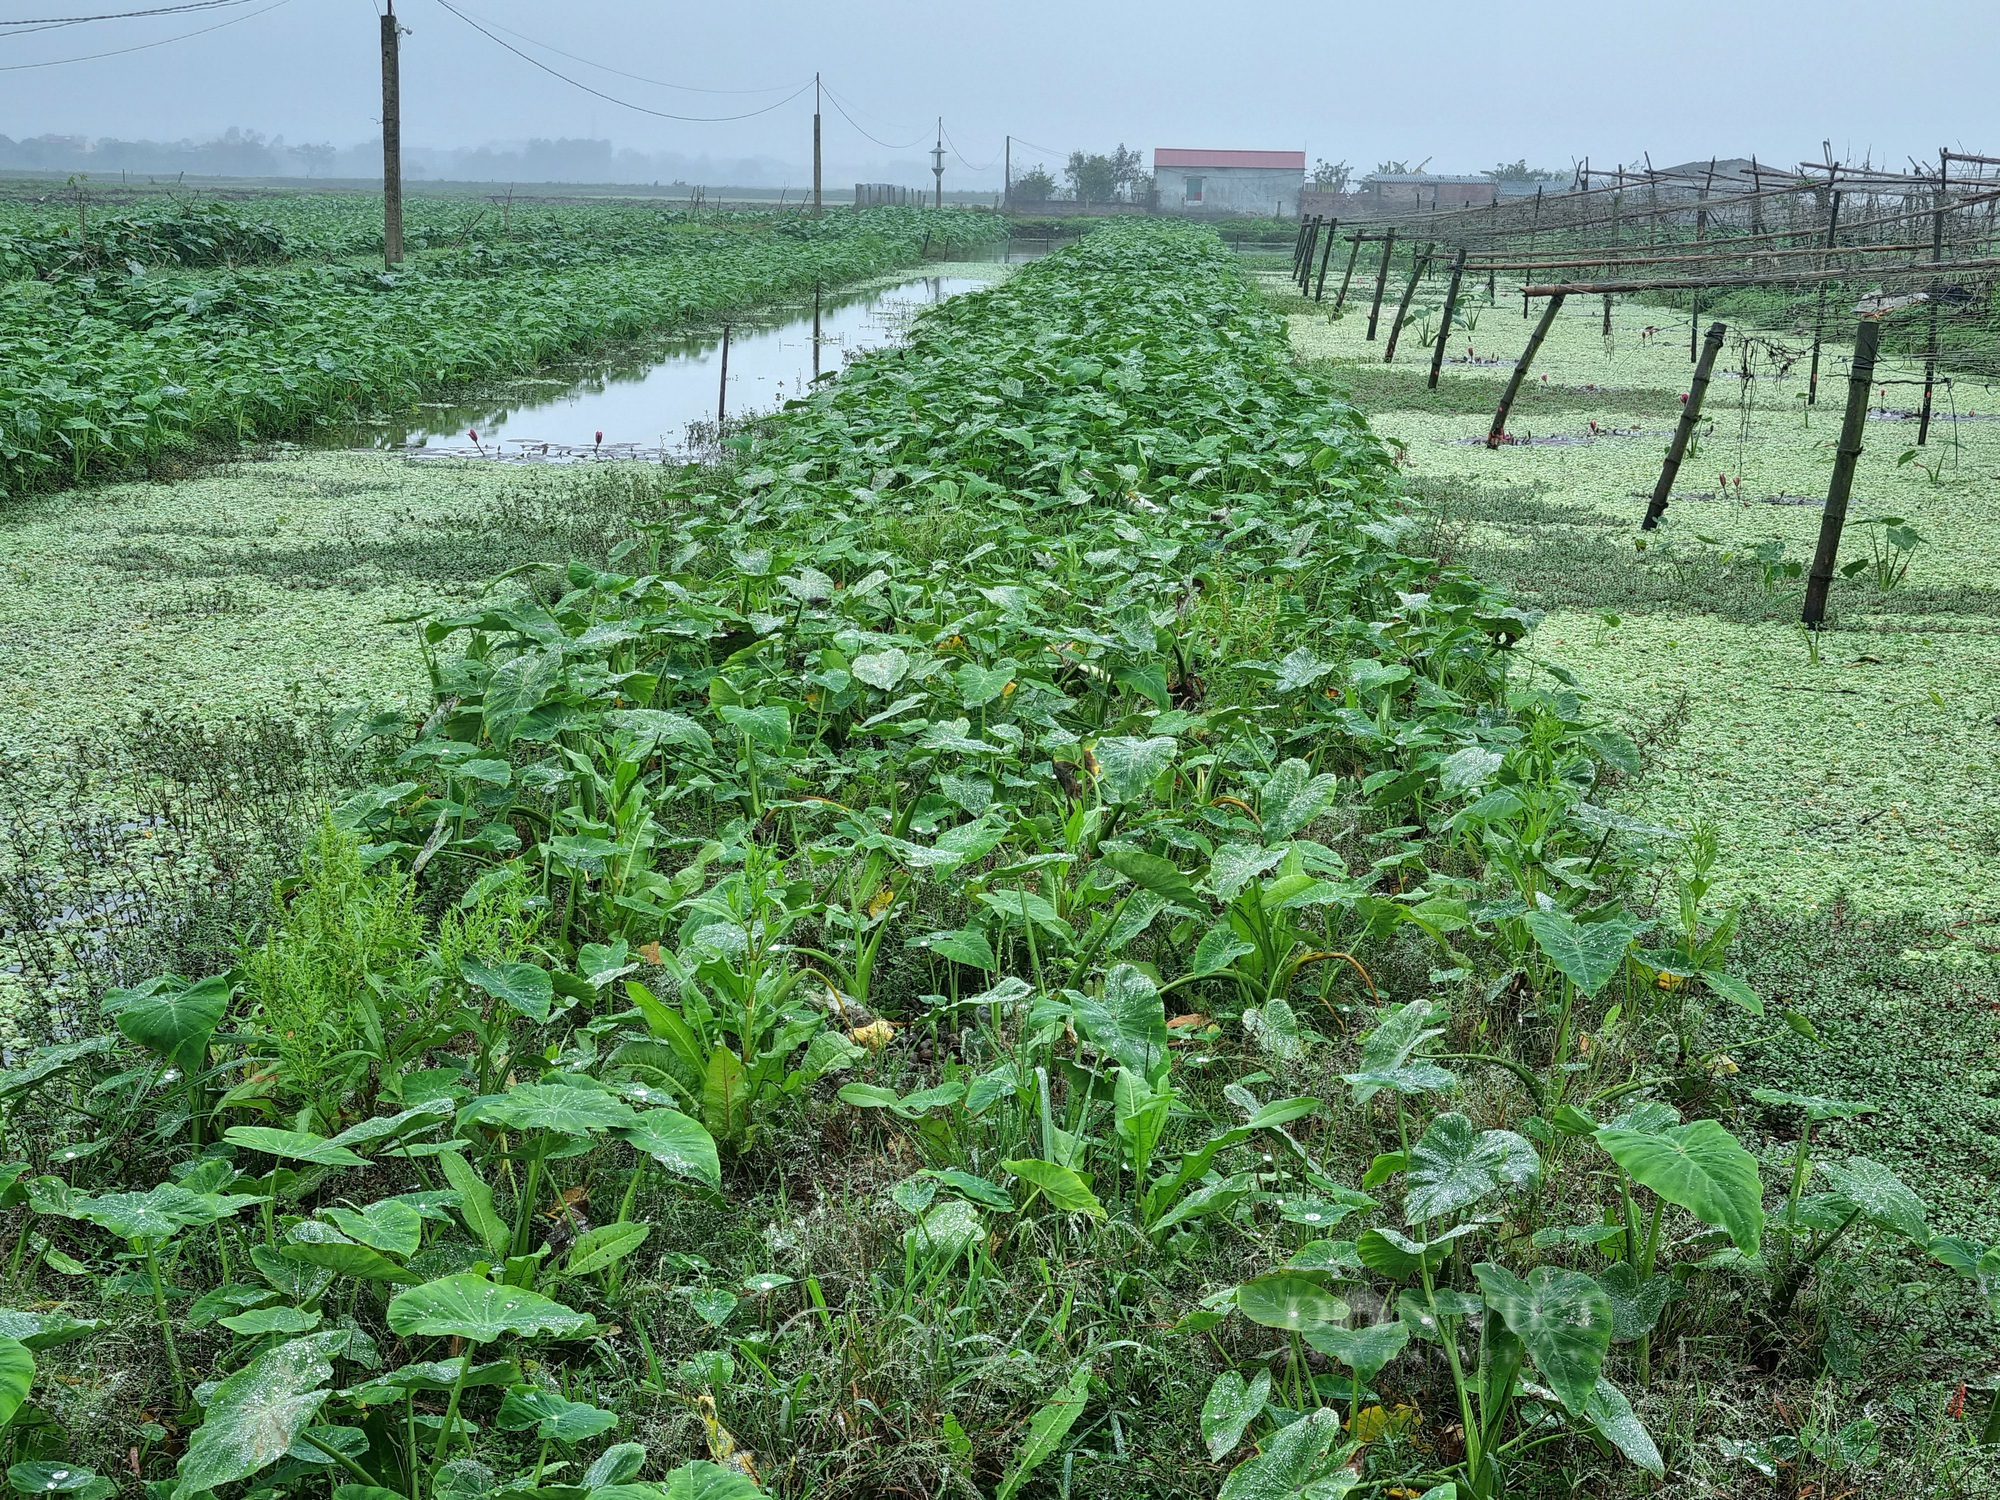 Rời nghề giáo viên về trồng cây khoai môn ngọt Thái Lan lấy ngó lãi 300 triệu đồng/năm - Ảnh 7.